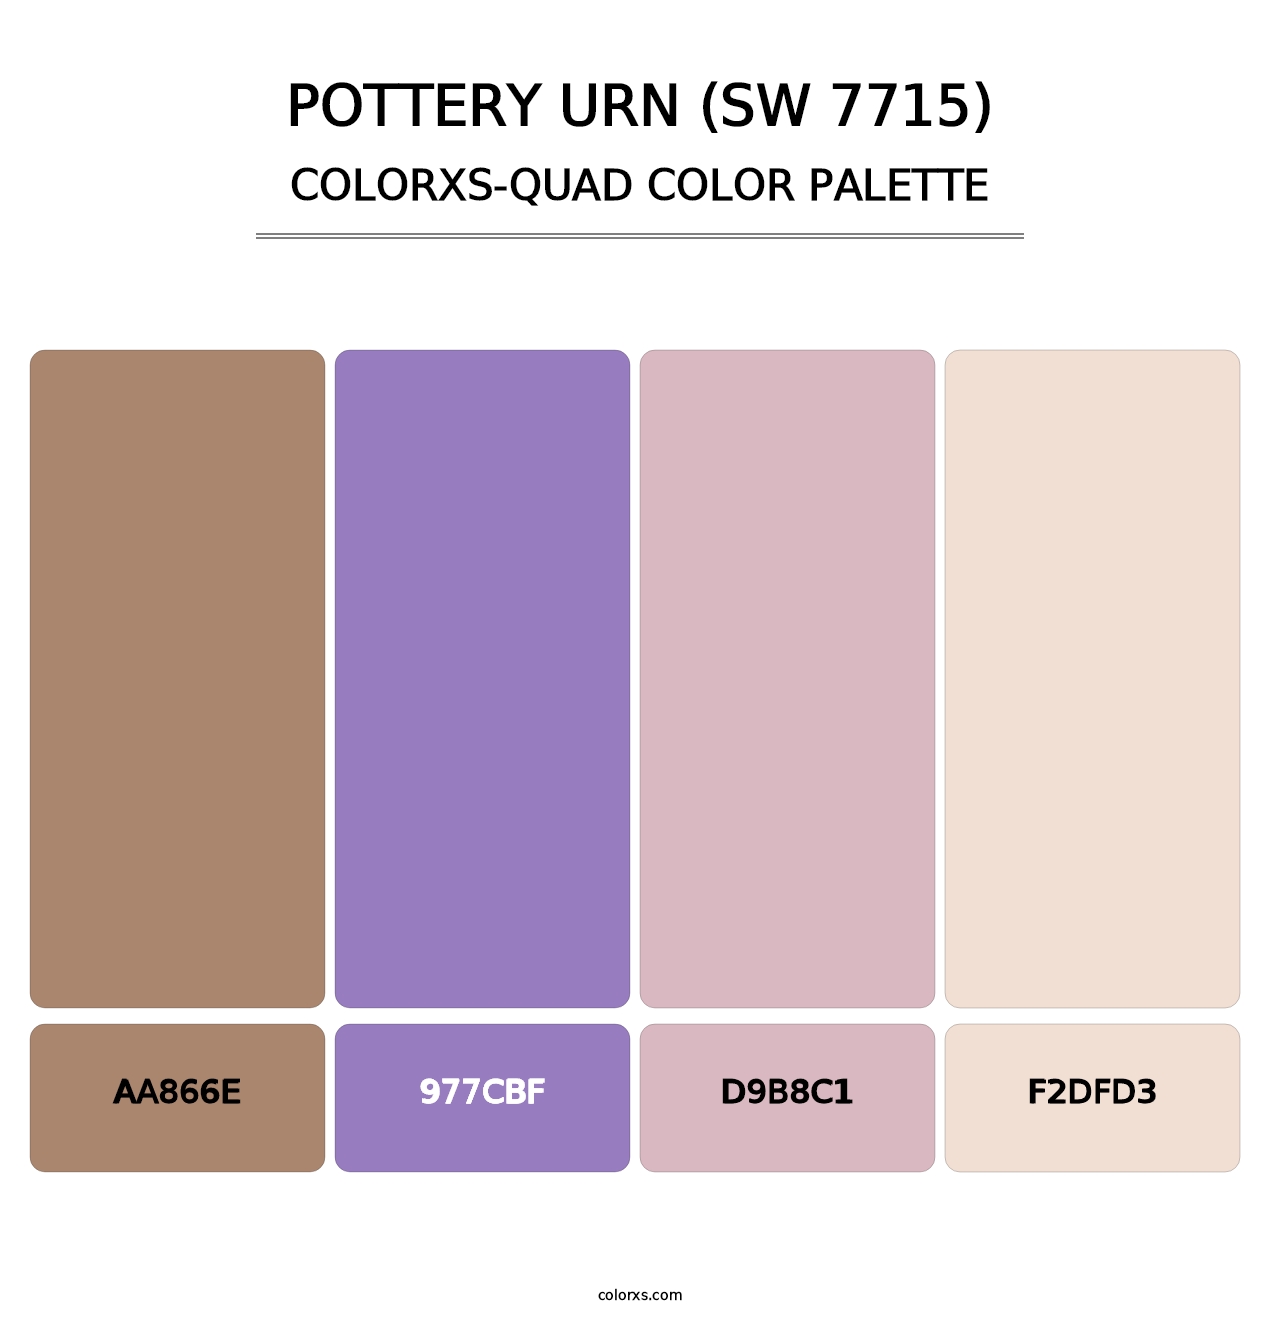 Pottery Urn (SW 7715) - Colorxs Quad Palette